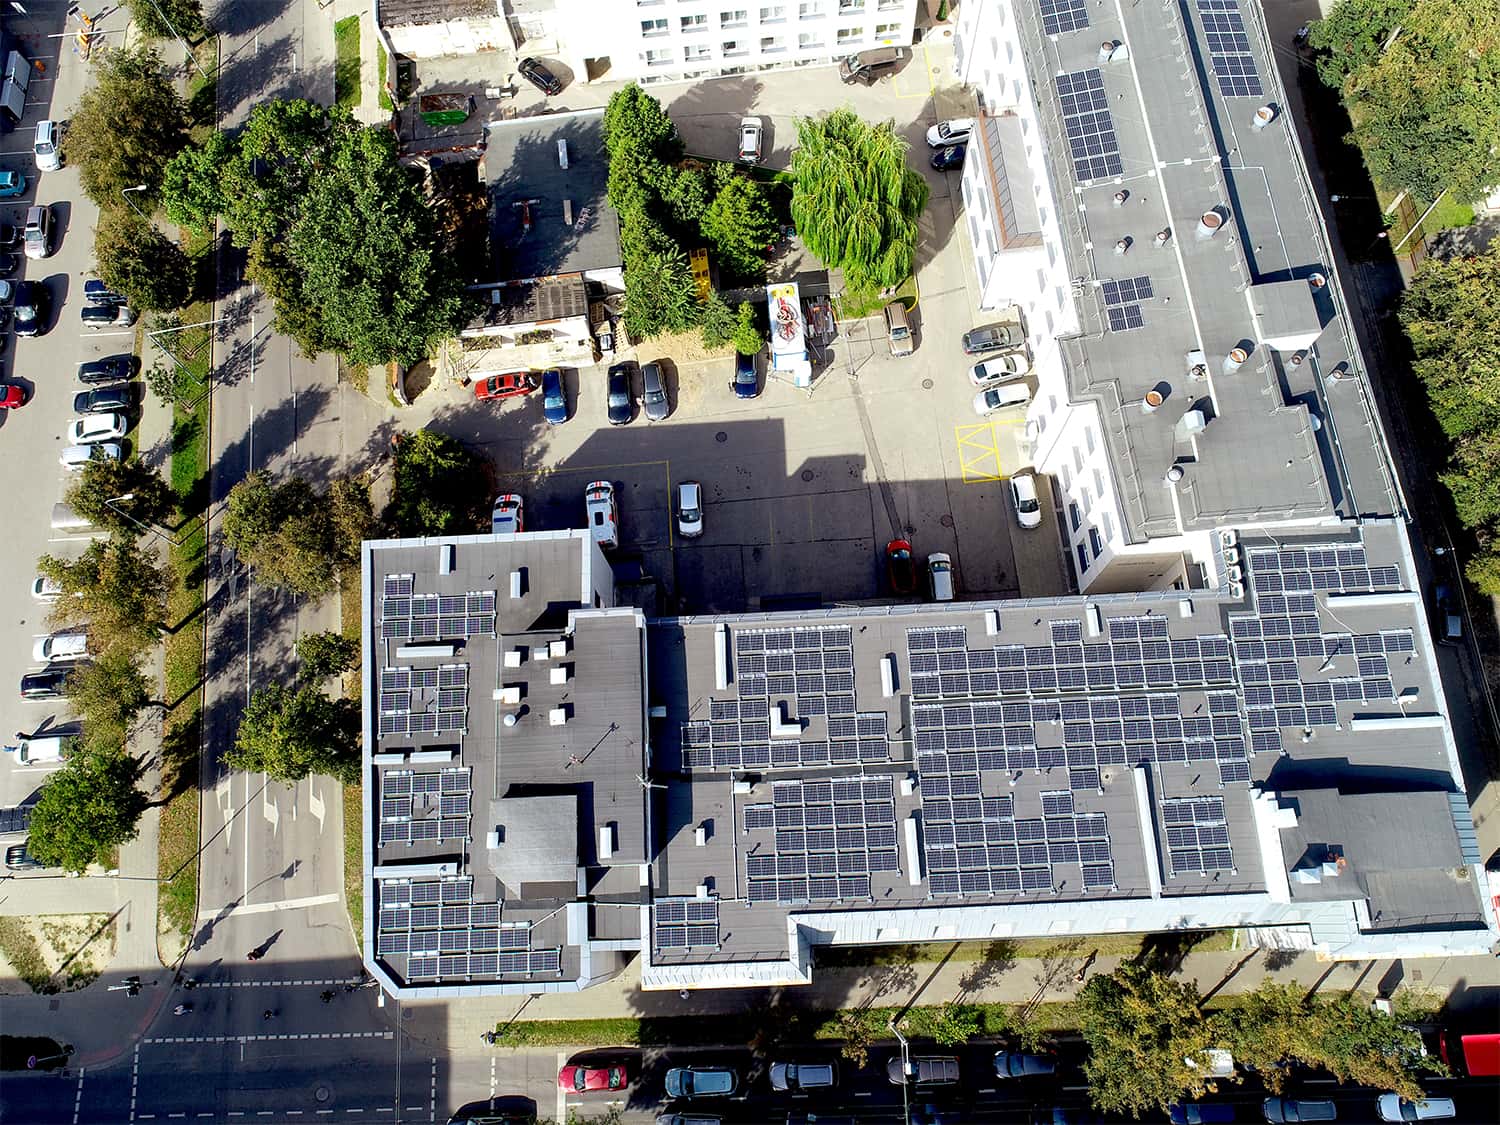 Mykolo Marcinkevičiaus ligoninės stogas su saulės elektrinėmis